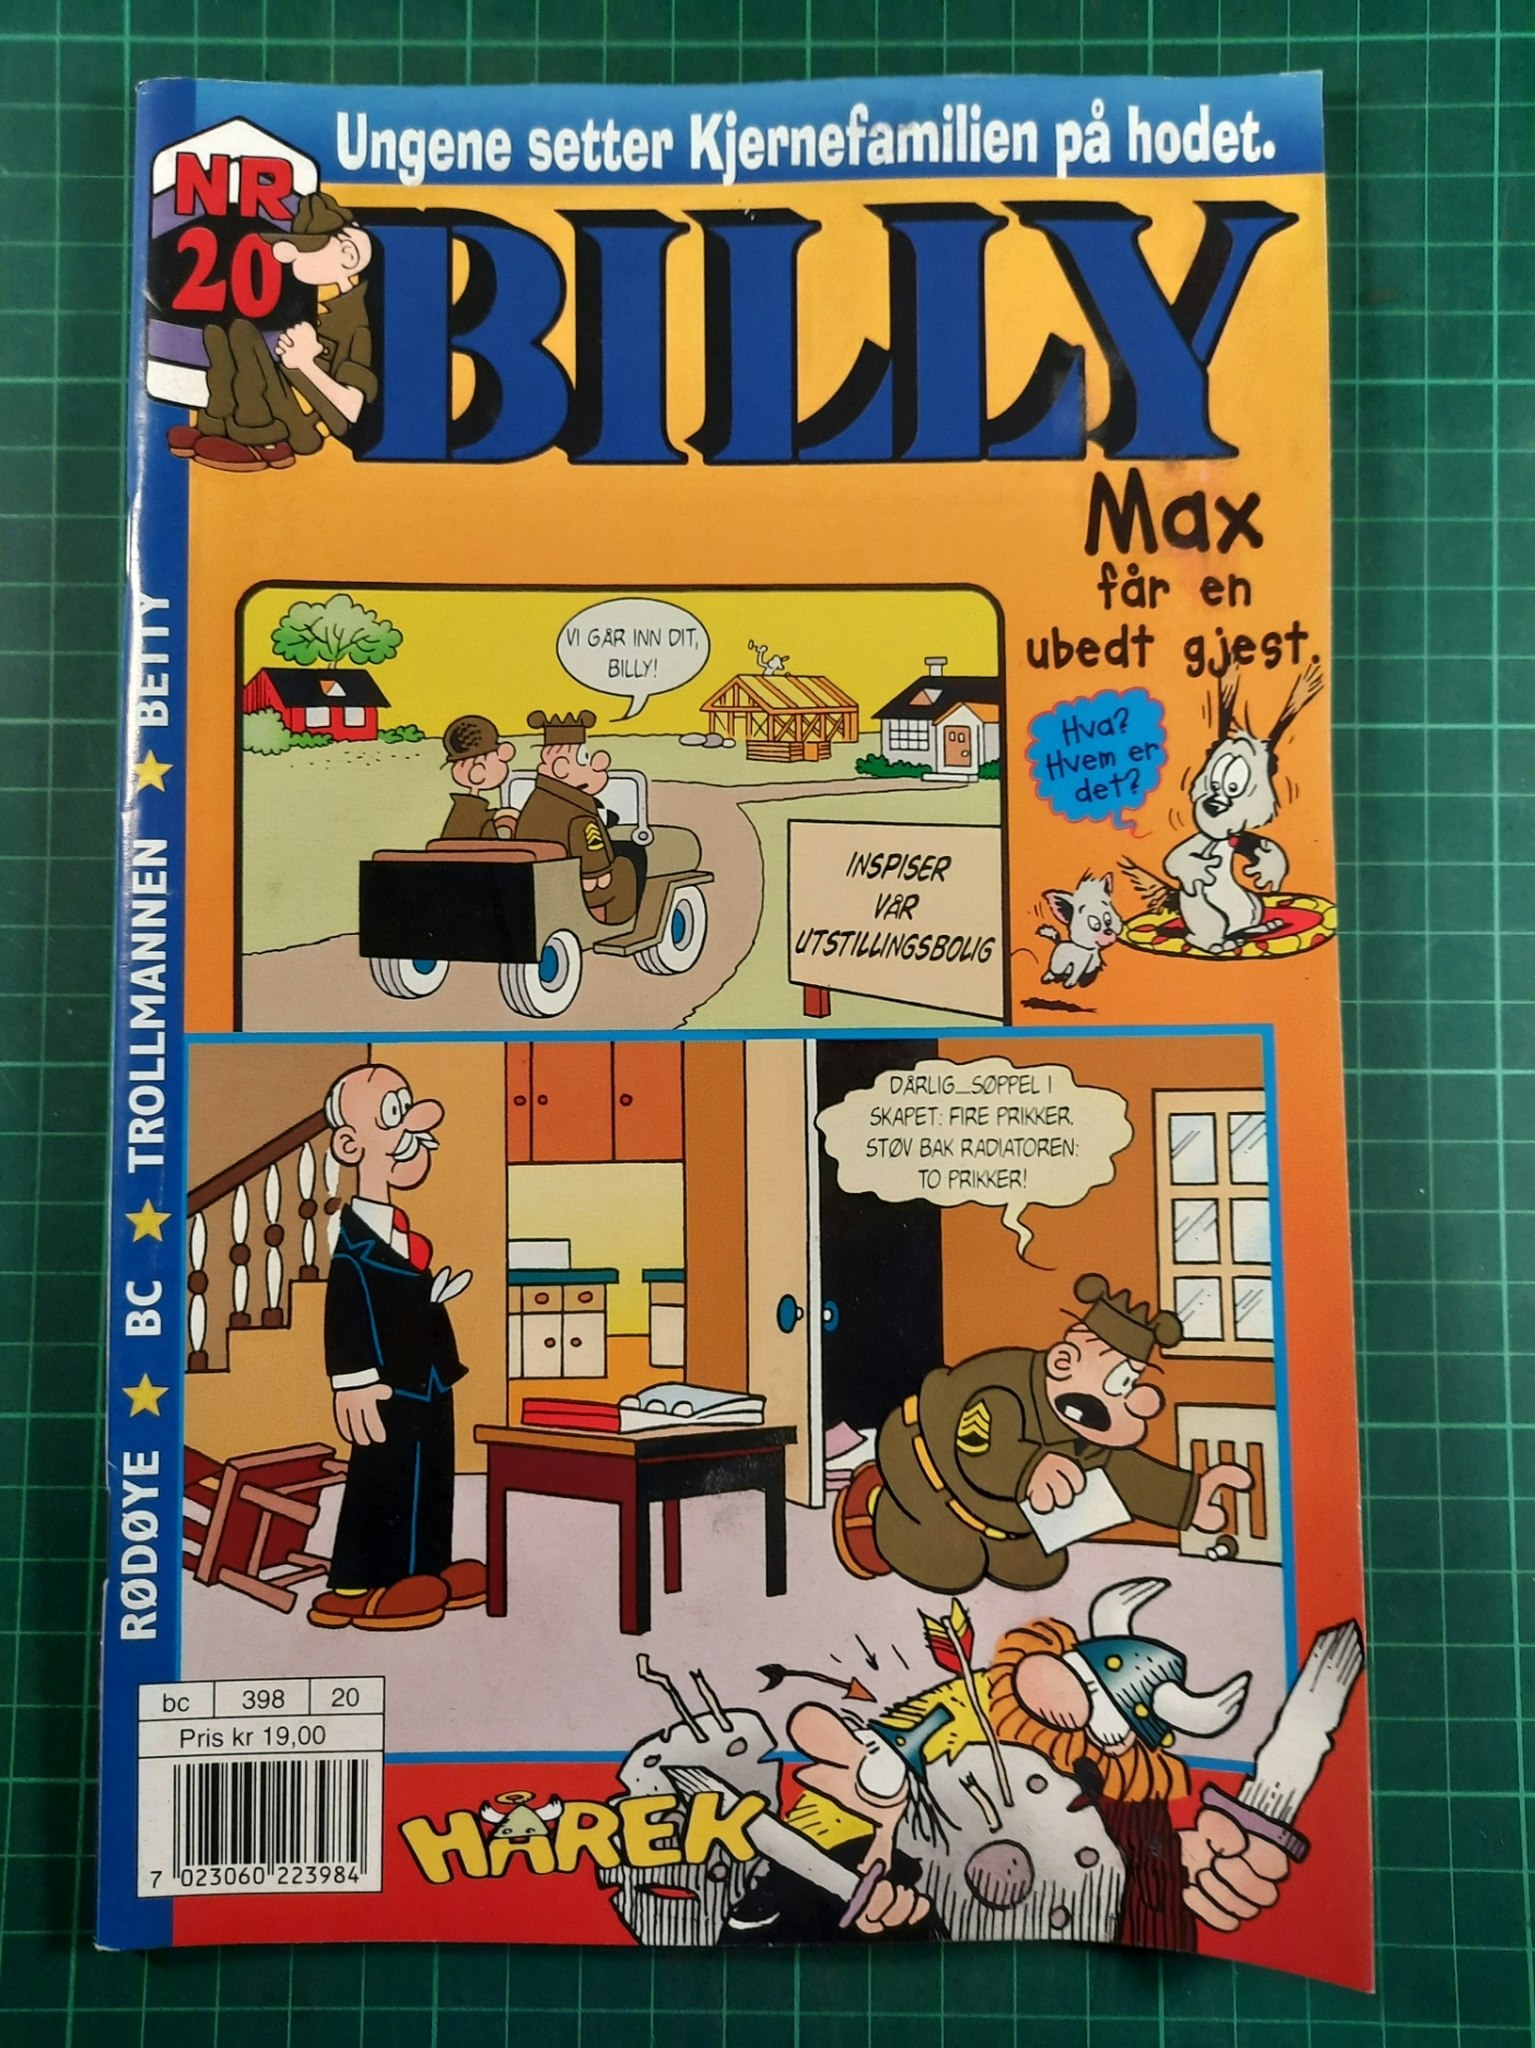 Billy 1998 - 20